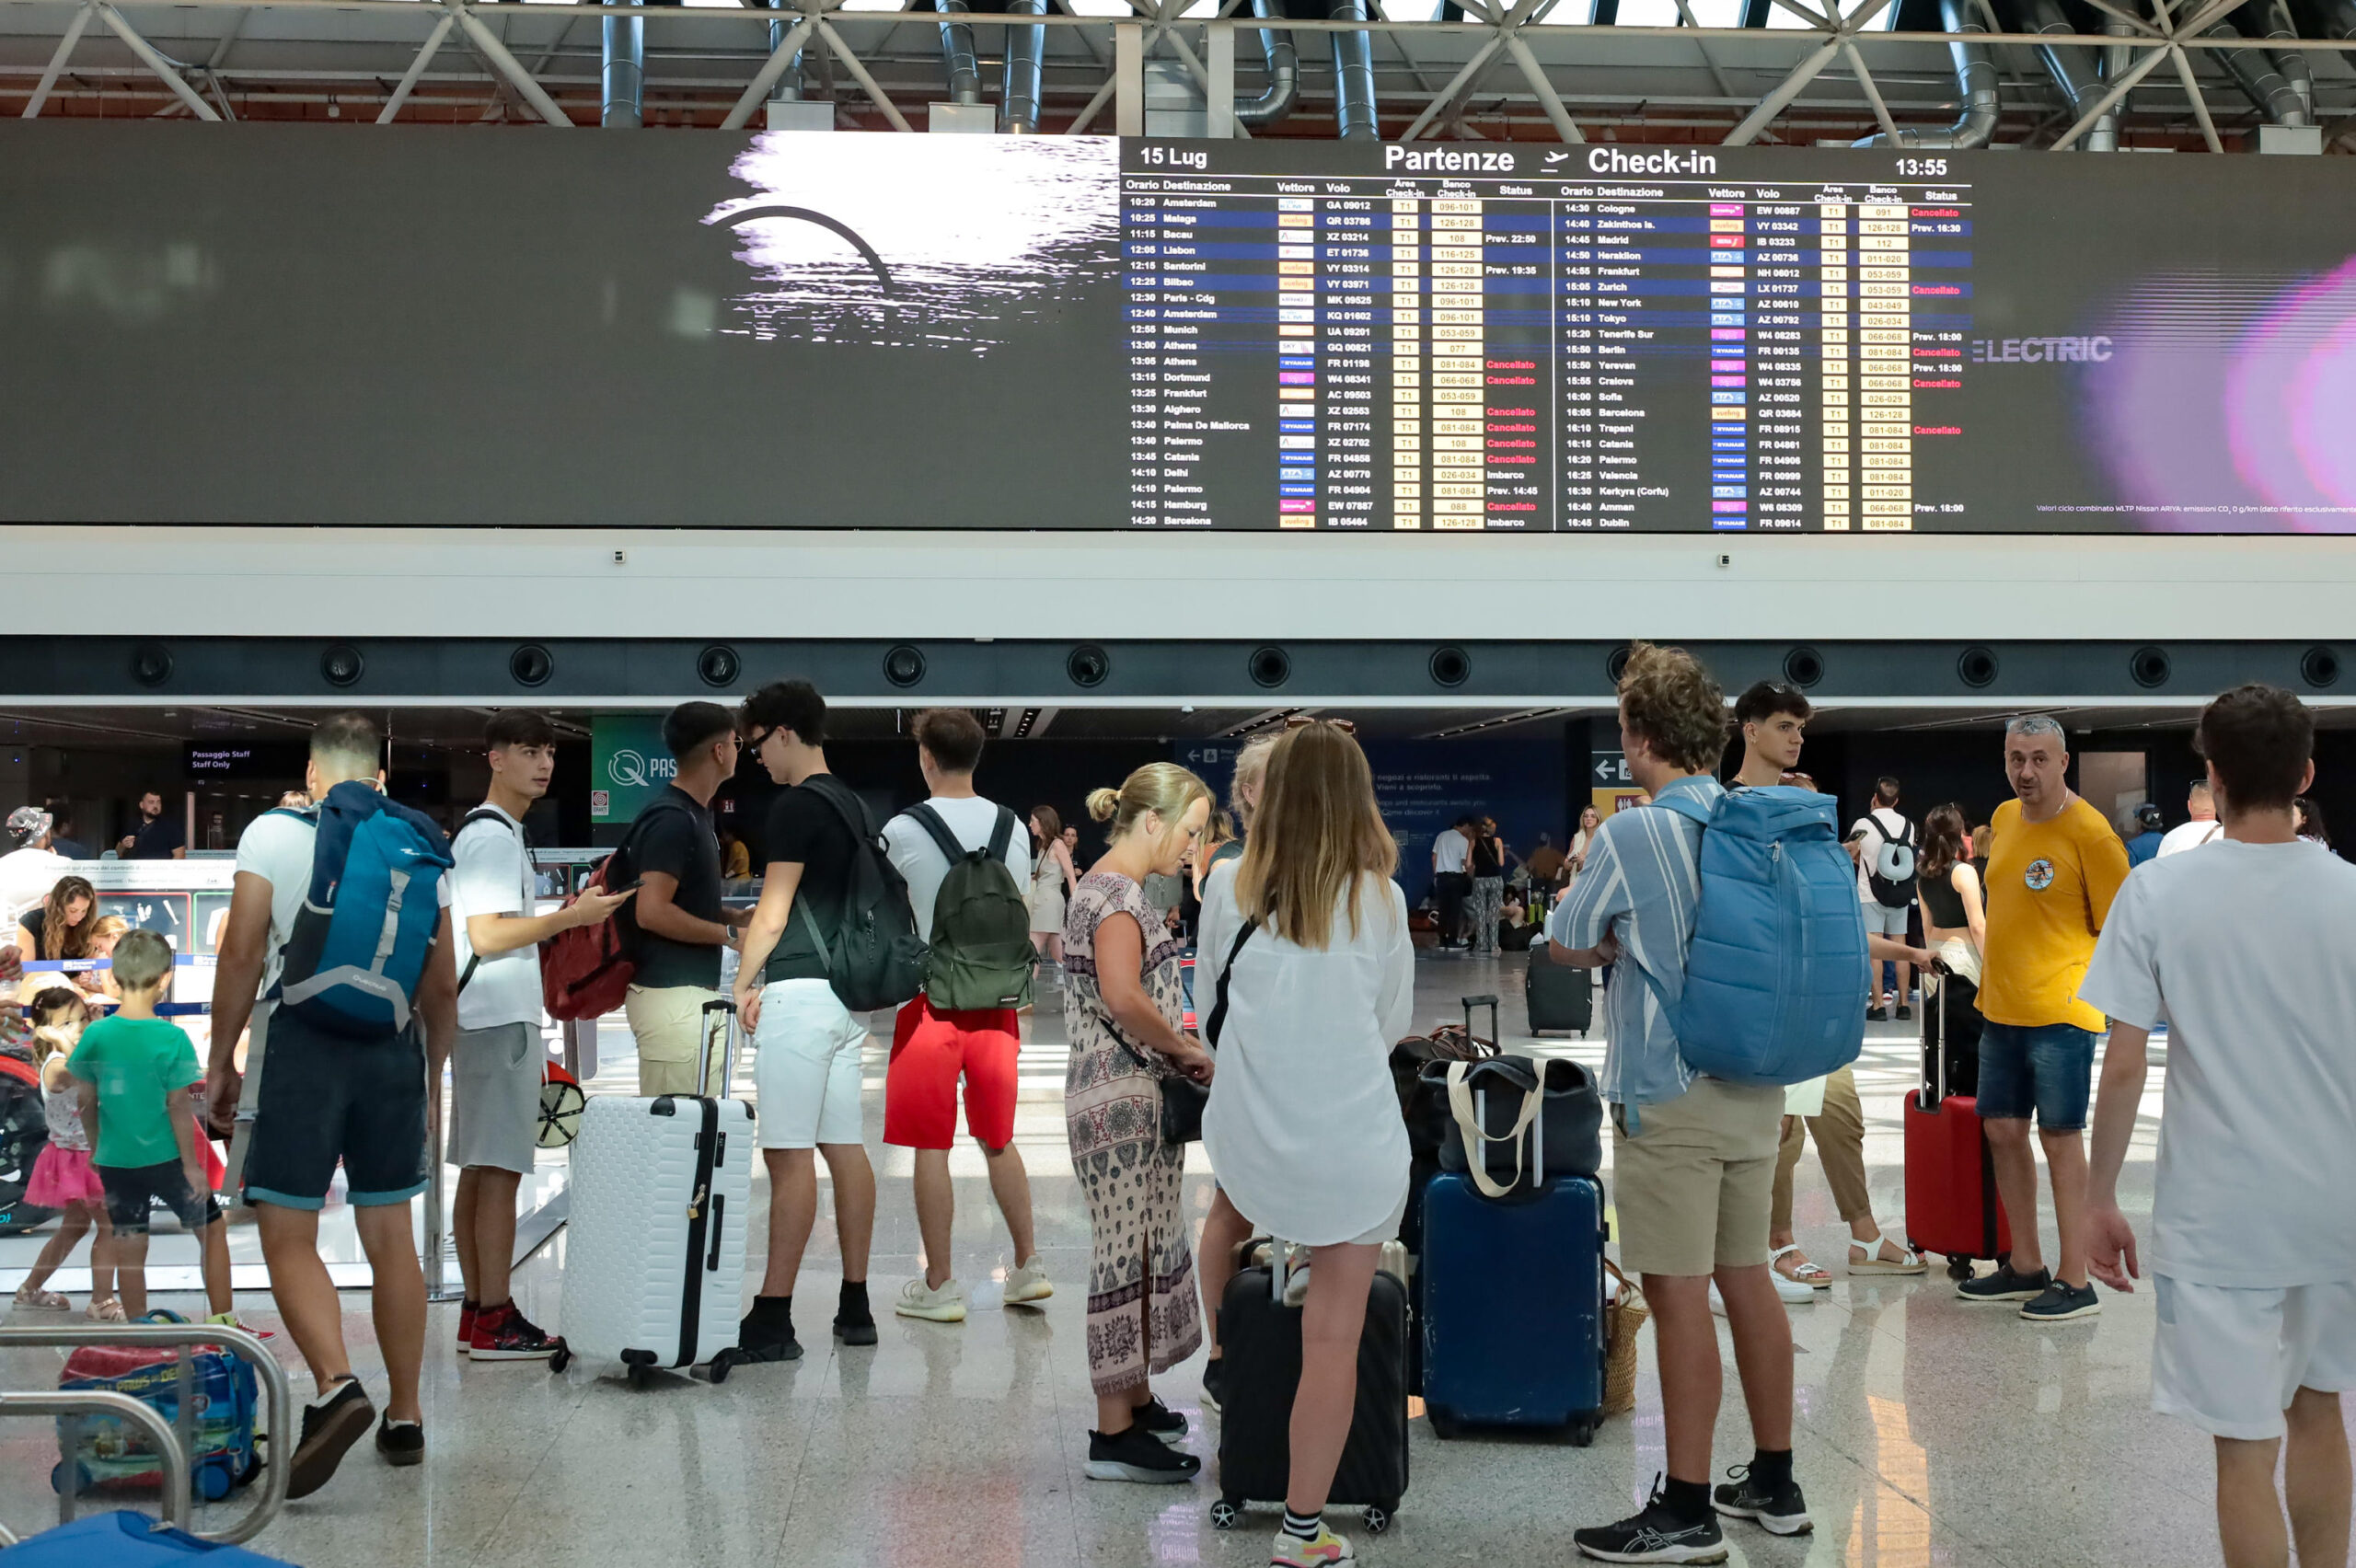 Non si registrano file di passeggeri rimasti a terra in attesa davanti ai banchi check-in dell'aeroporto di Fiumicino nel giorno dello sciopero dei lavoratori del trasporto aereo, 15 luglio 2023.
ANSA/ TELENEWS